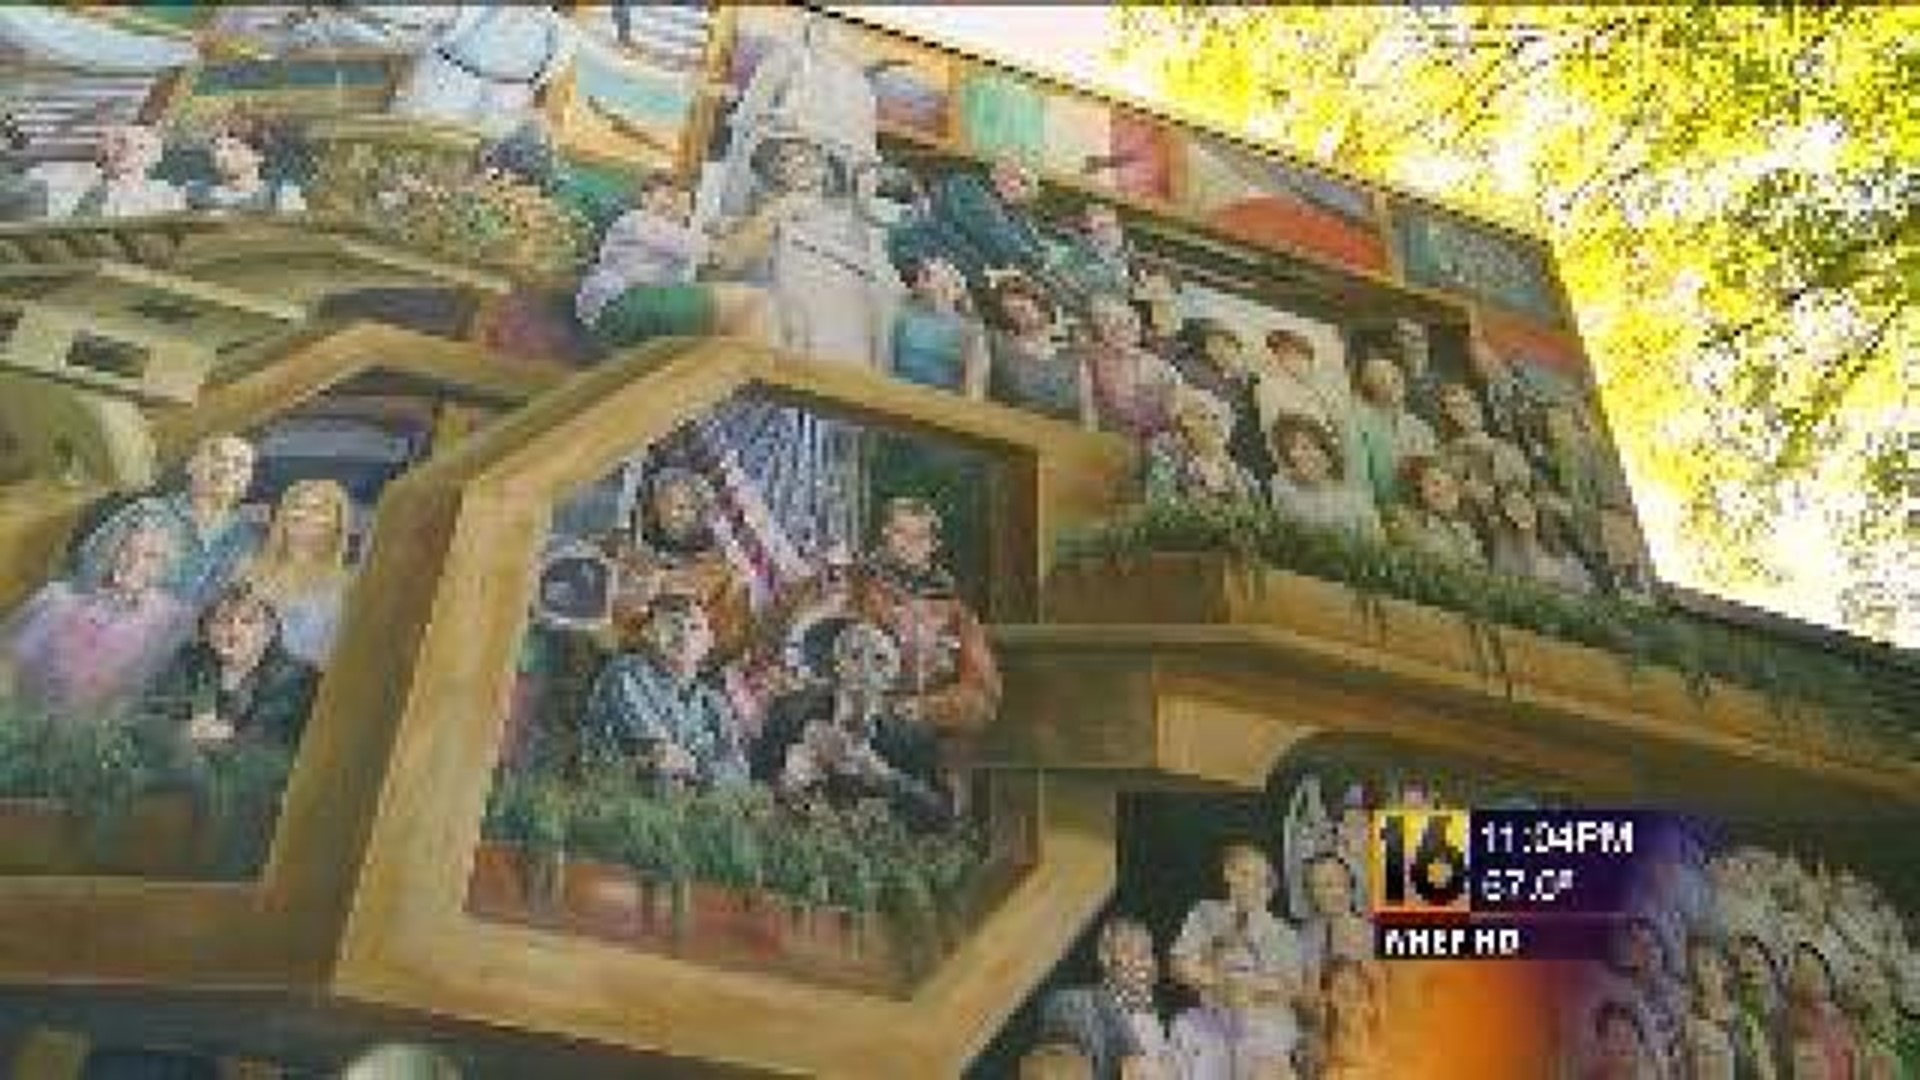 Penn State Mural Artist Paints For 9/11